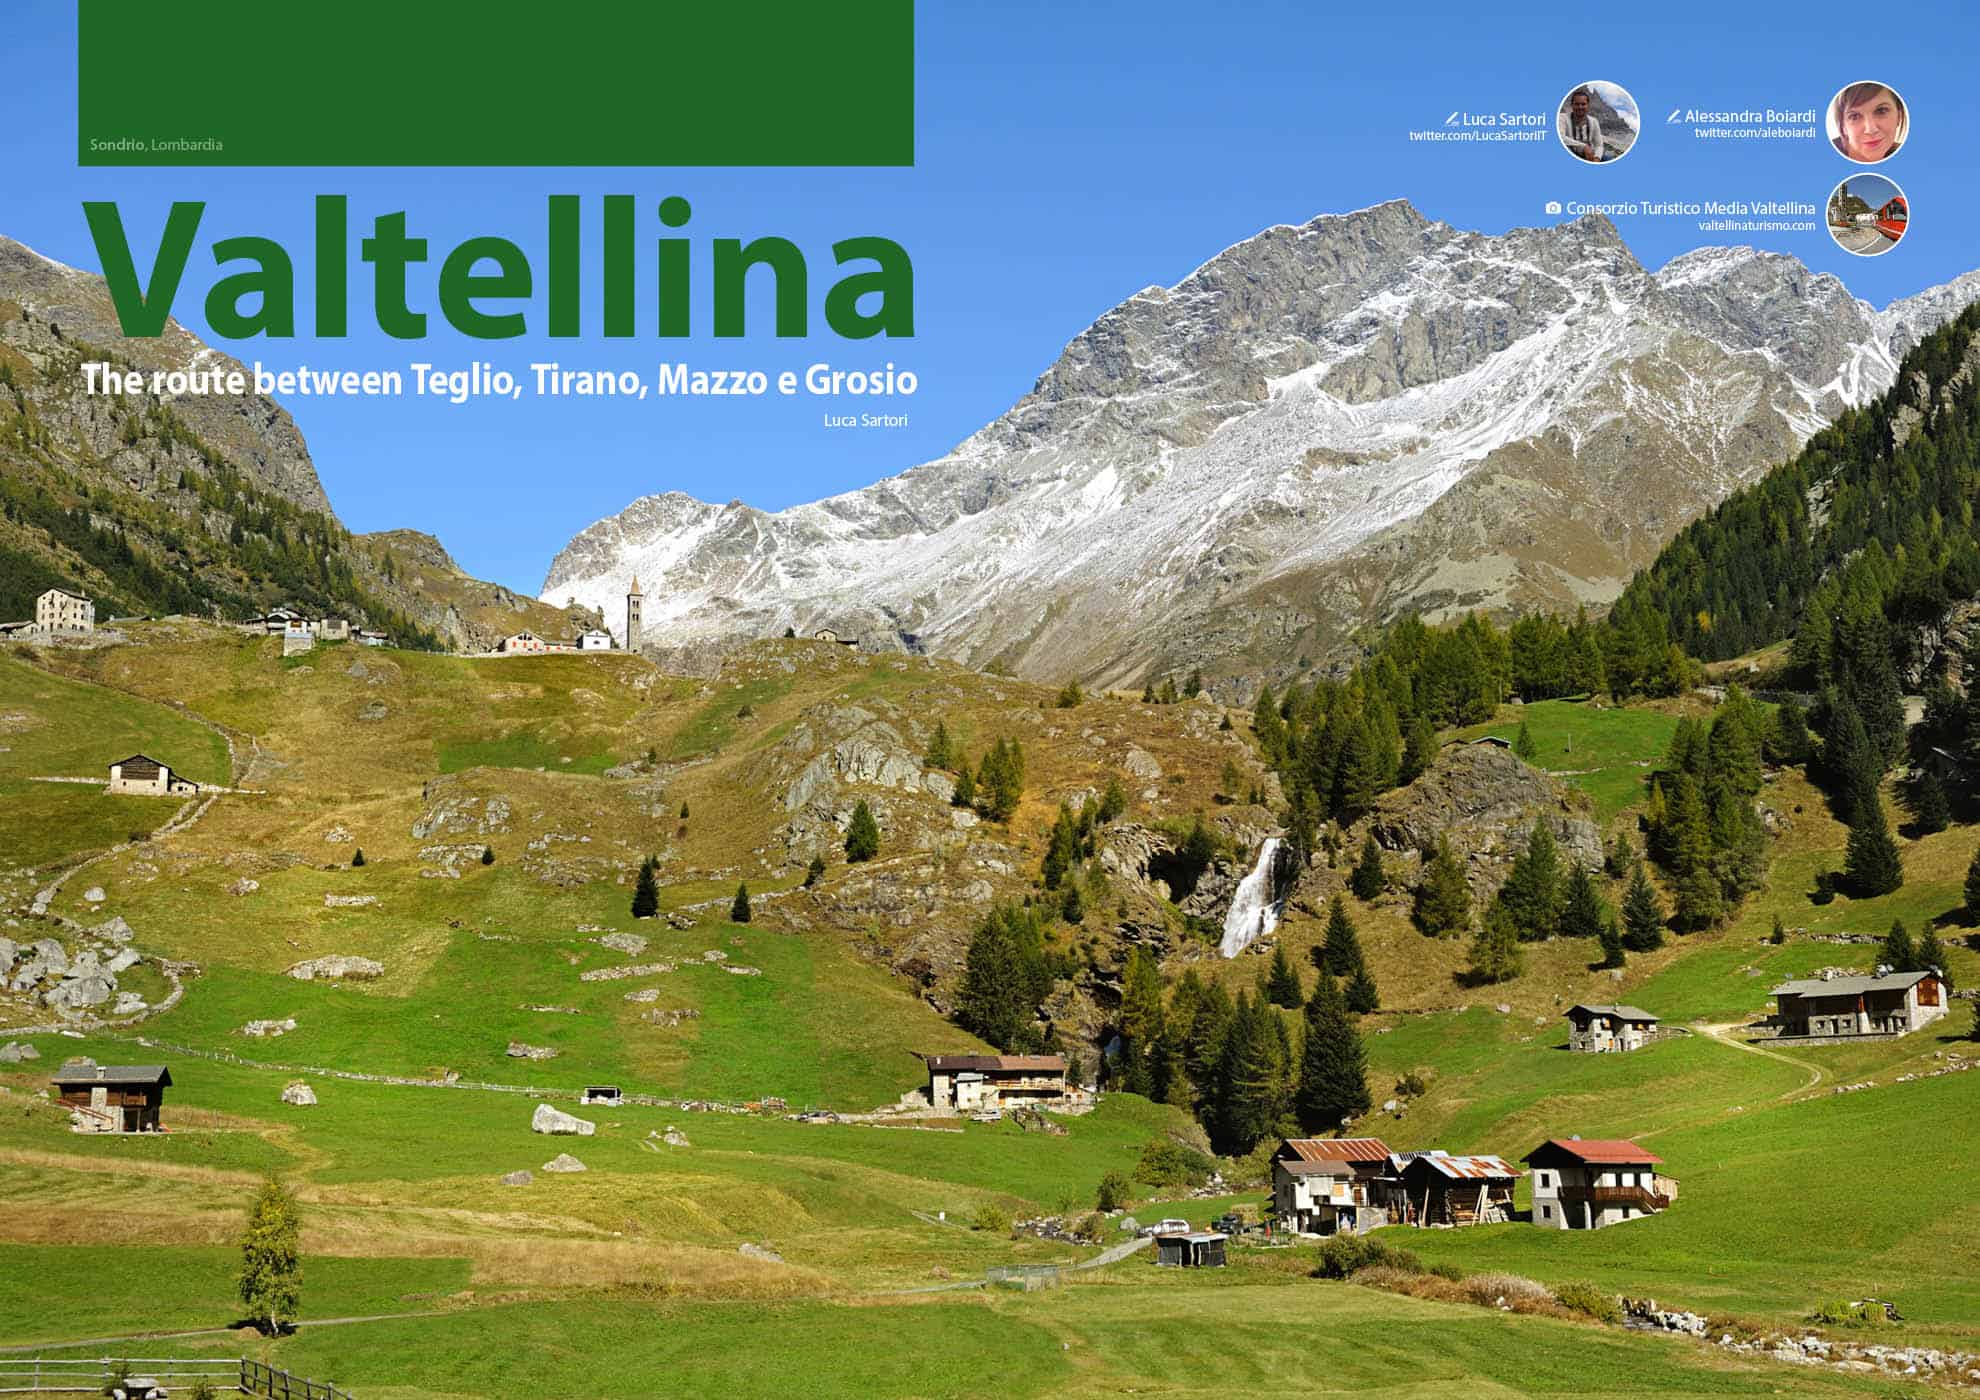 e-borghi travel 1: Mountain and villages - Valtellina, The route between Teglio, Tirano, Mazzo e Grosio